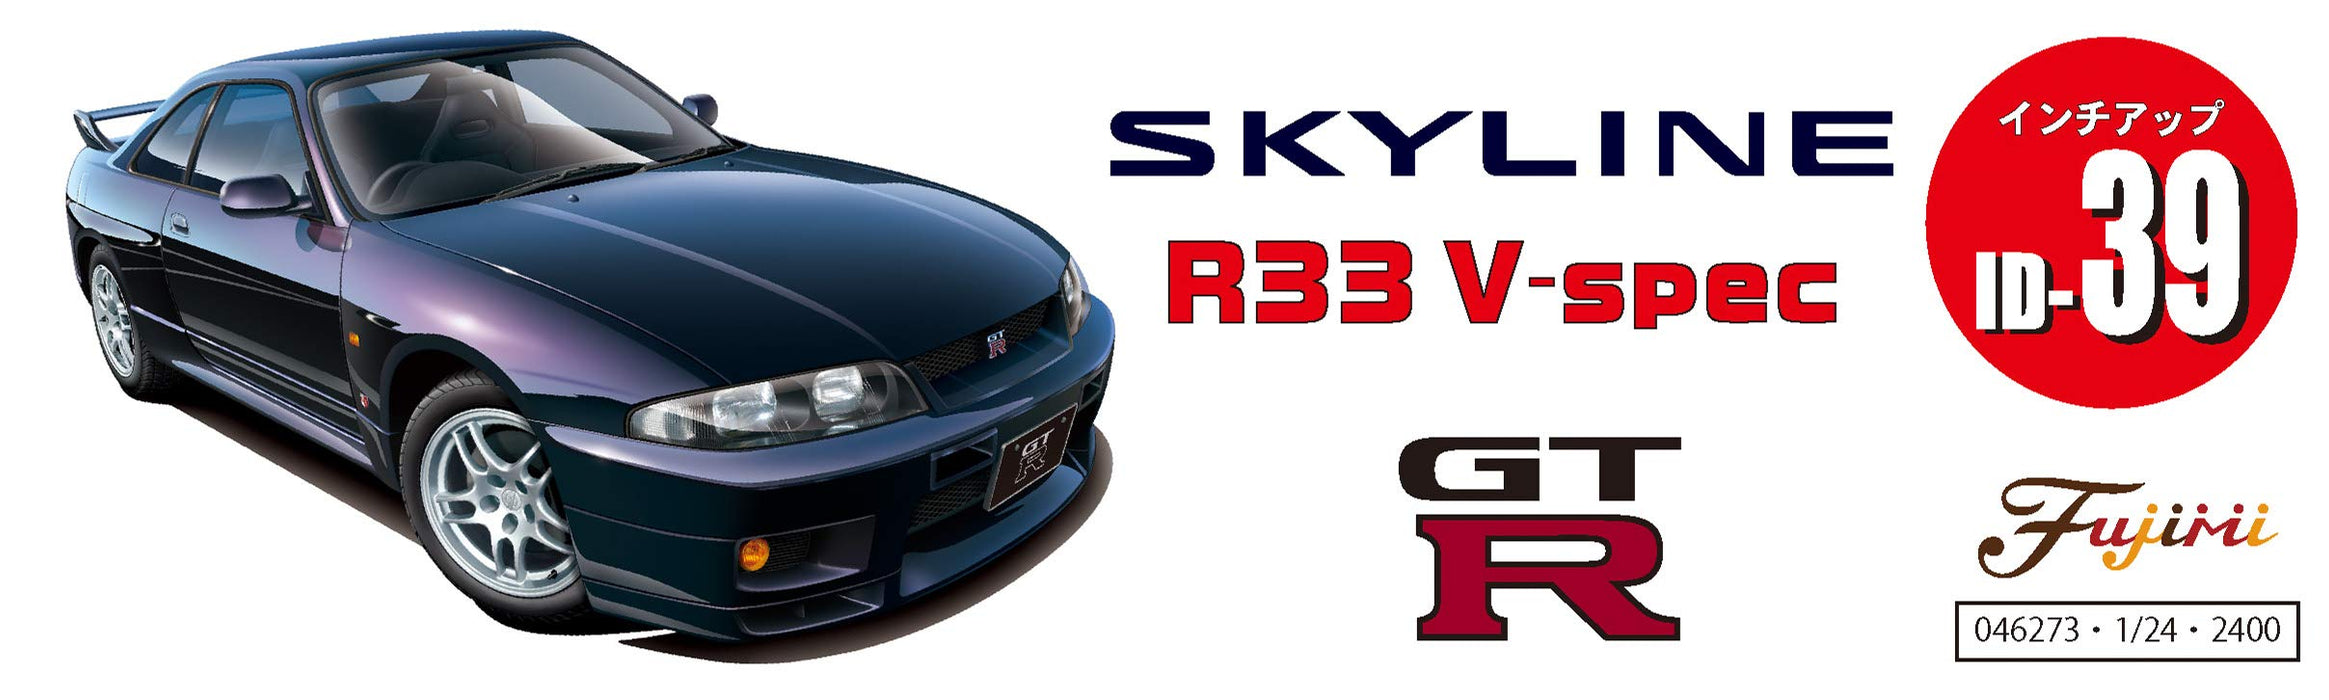 Fujimi Inch Up 1/24 R33 Skyline Gt-R V-Spec 95 Kit de modèle de voiture à l'échelle japonaise